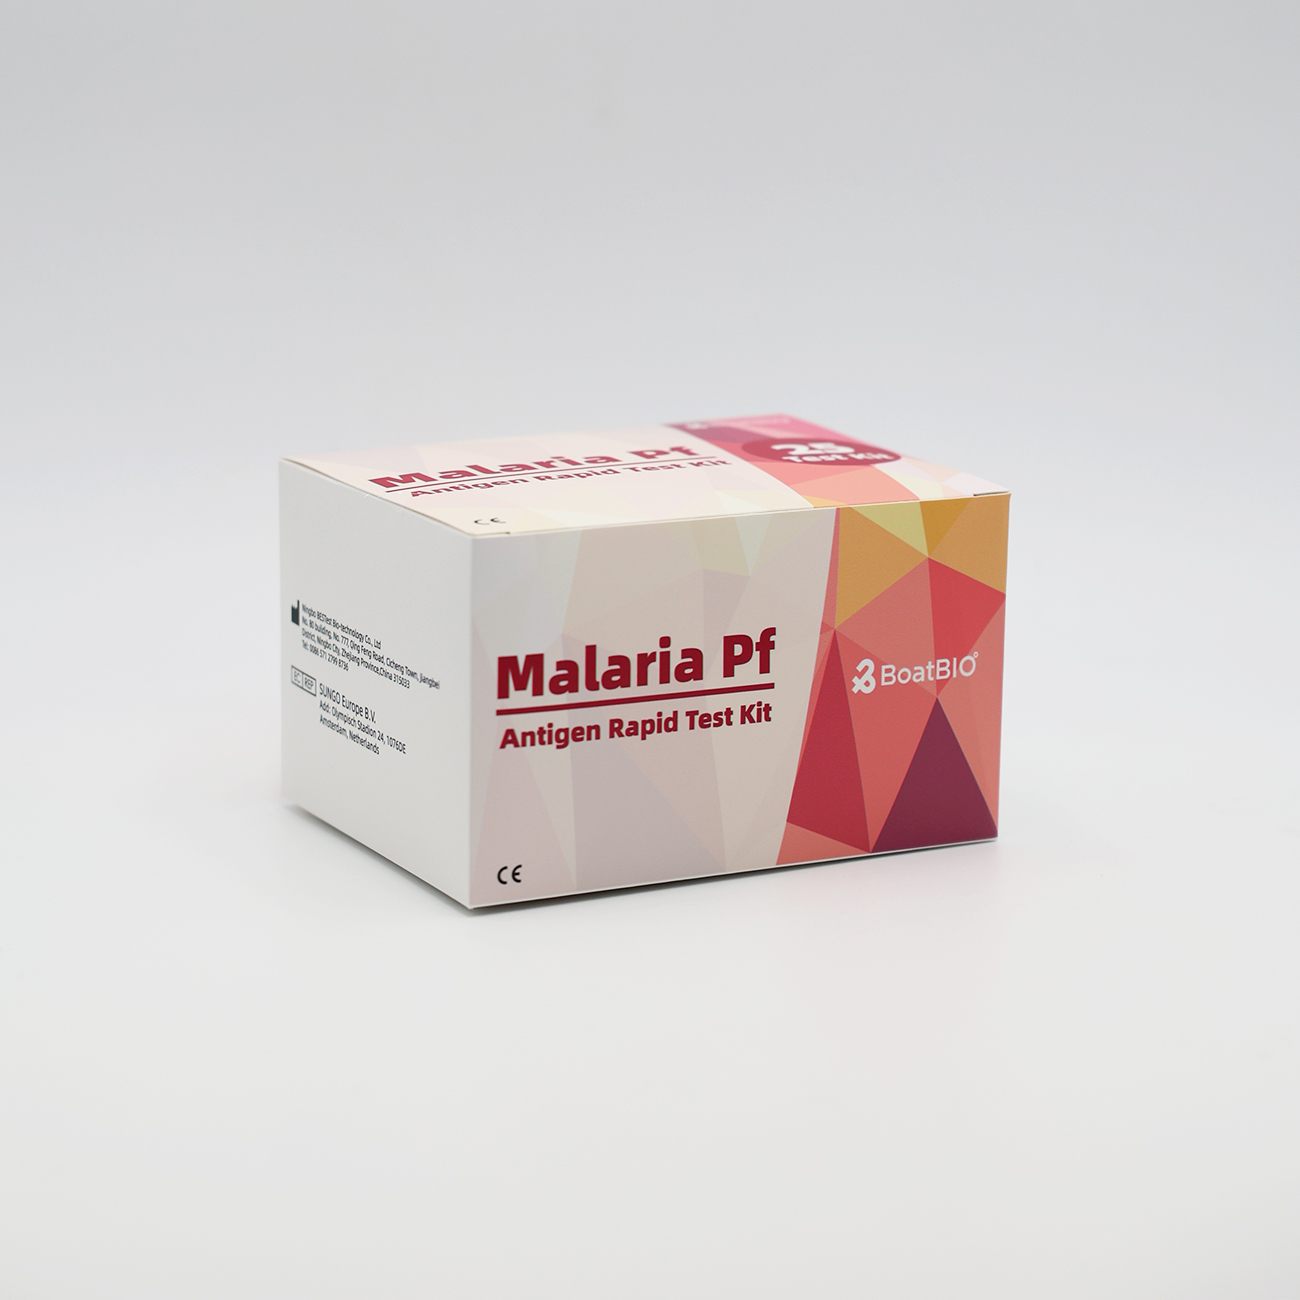 Malaria Pf Antigen Rapid Test Kit (kolloid arany)